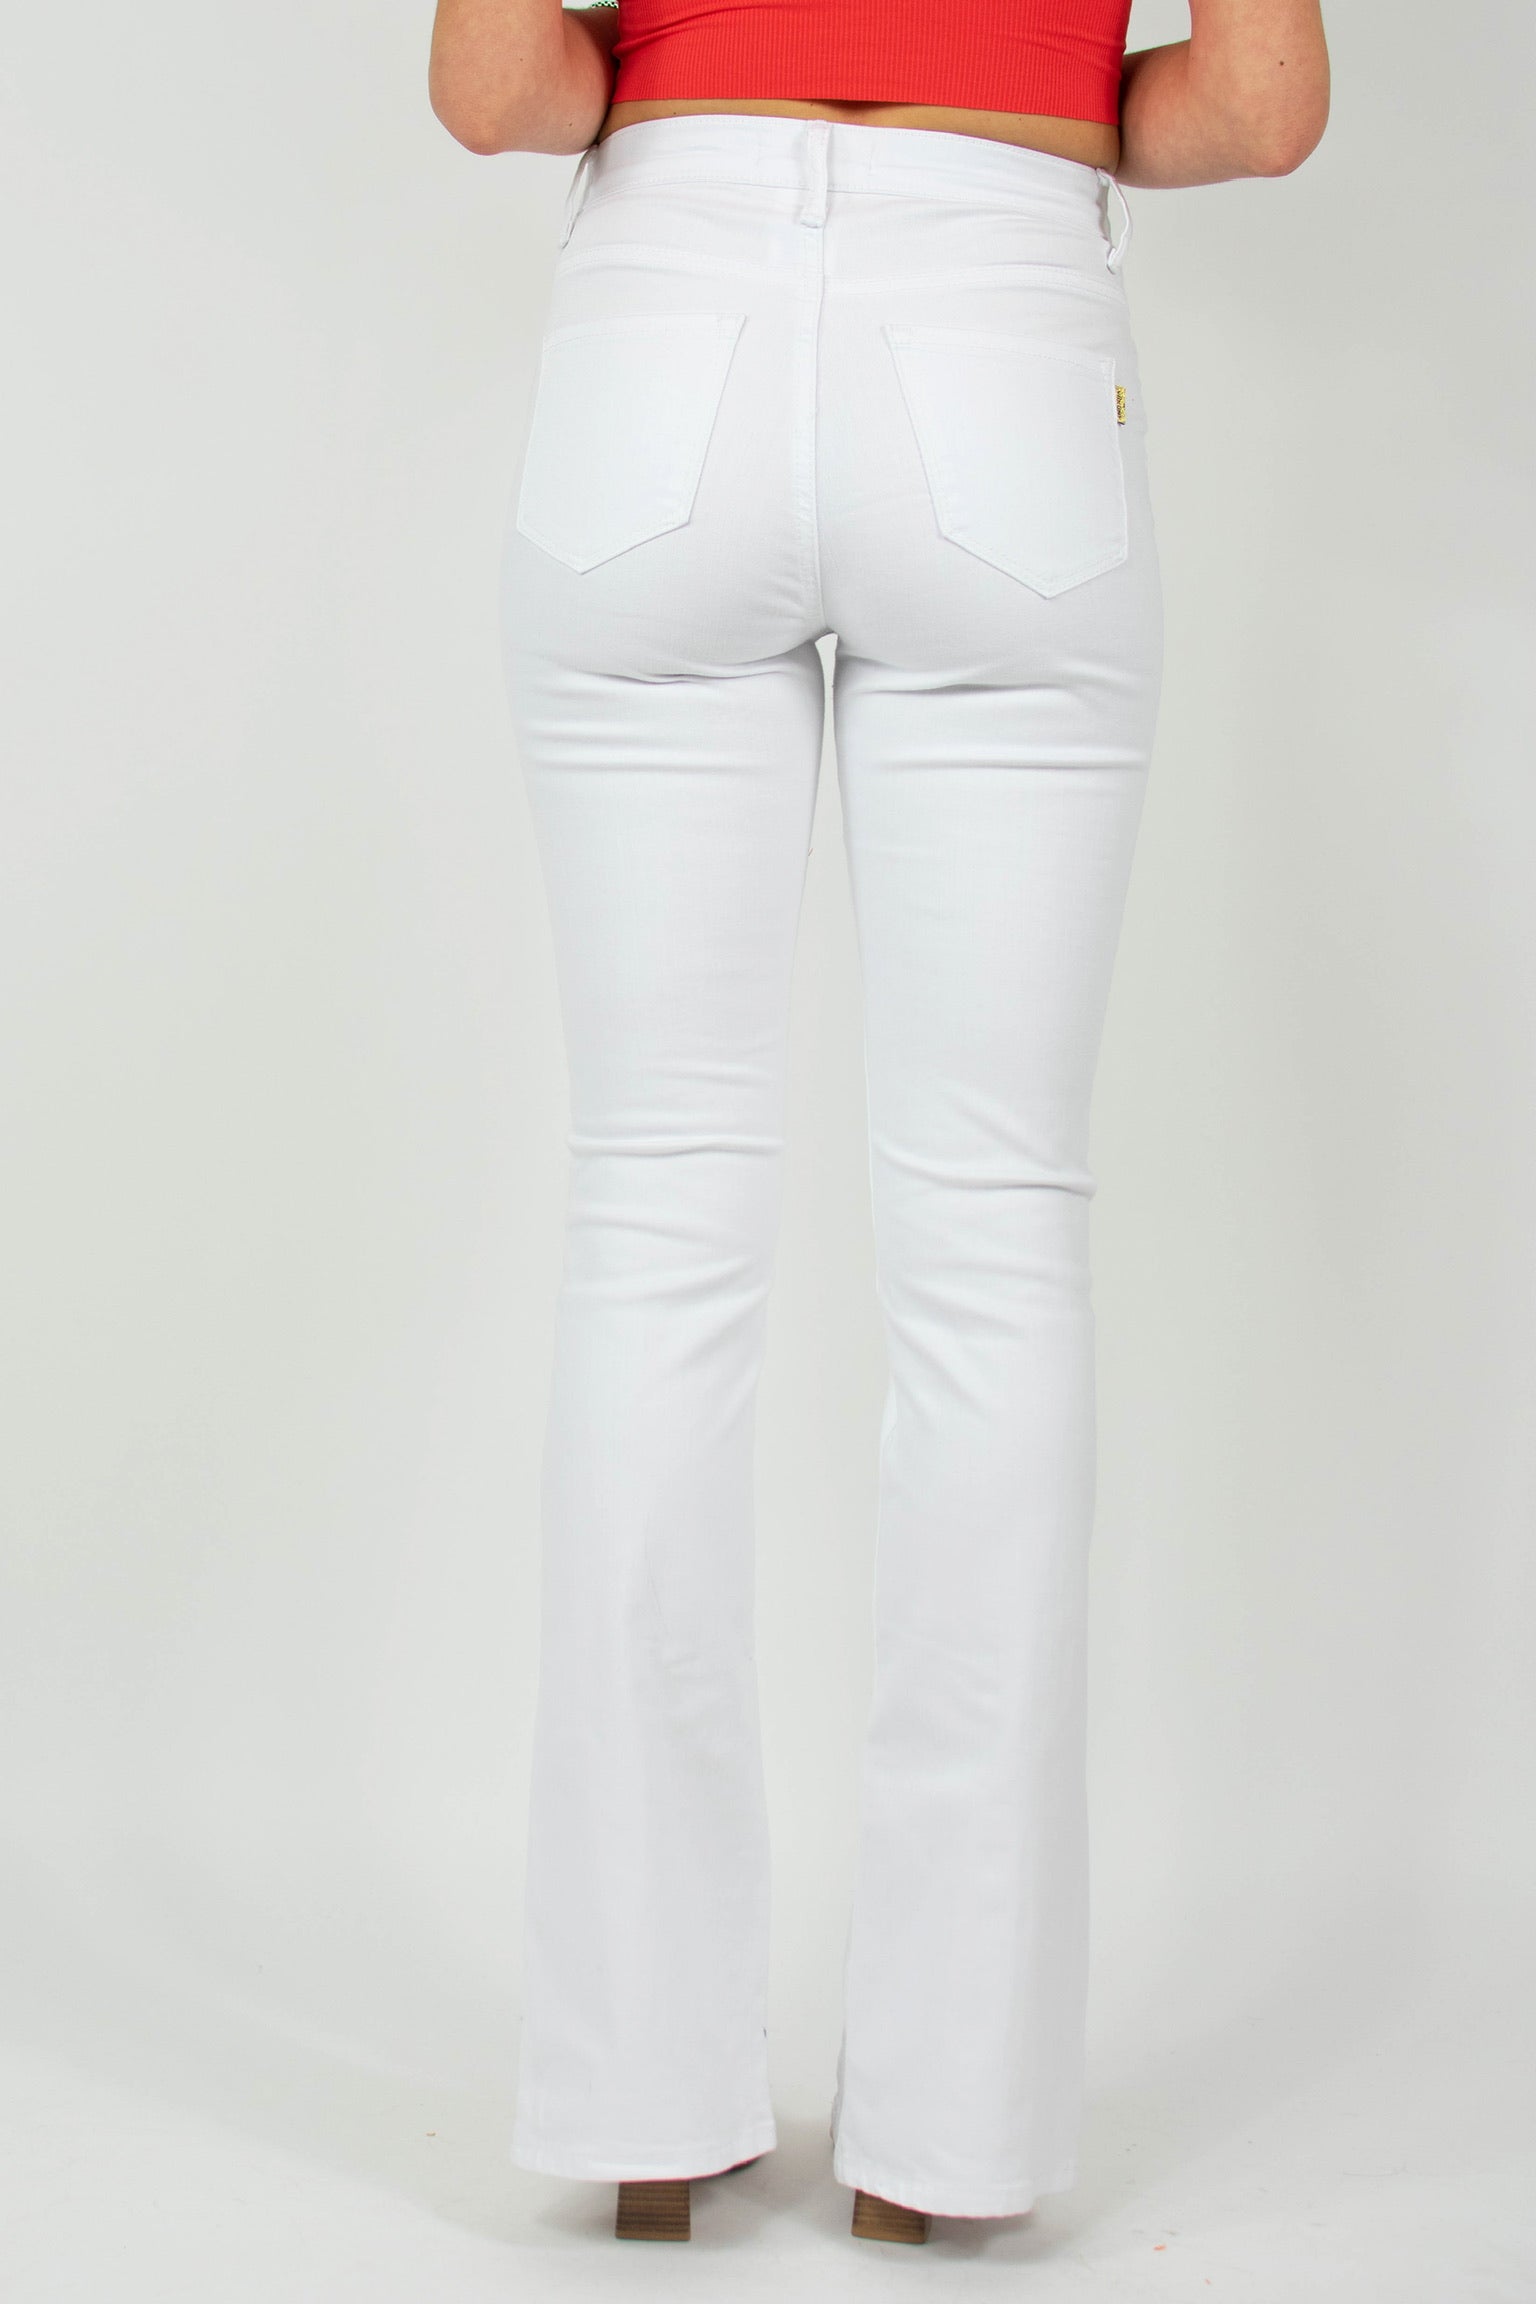 Bennett Jeans in White